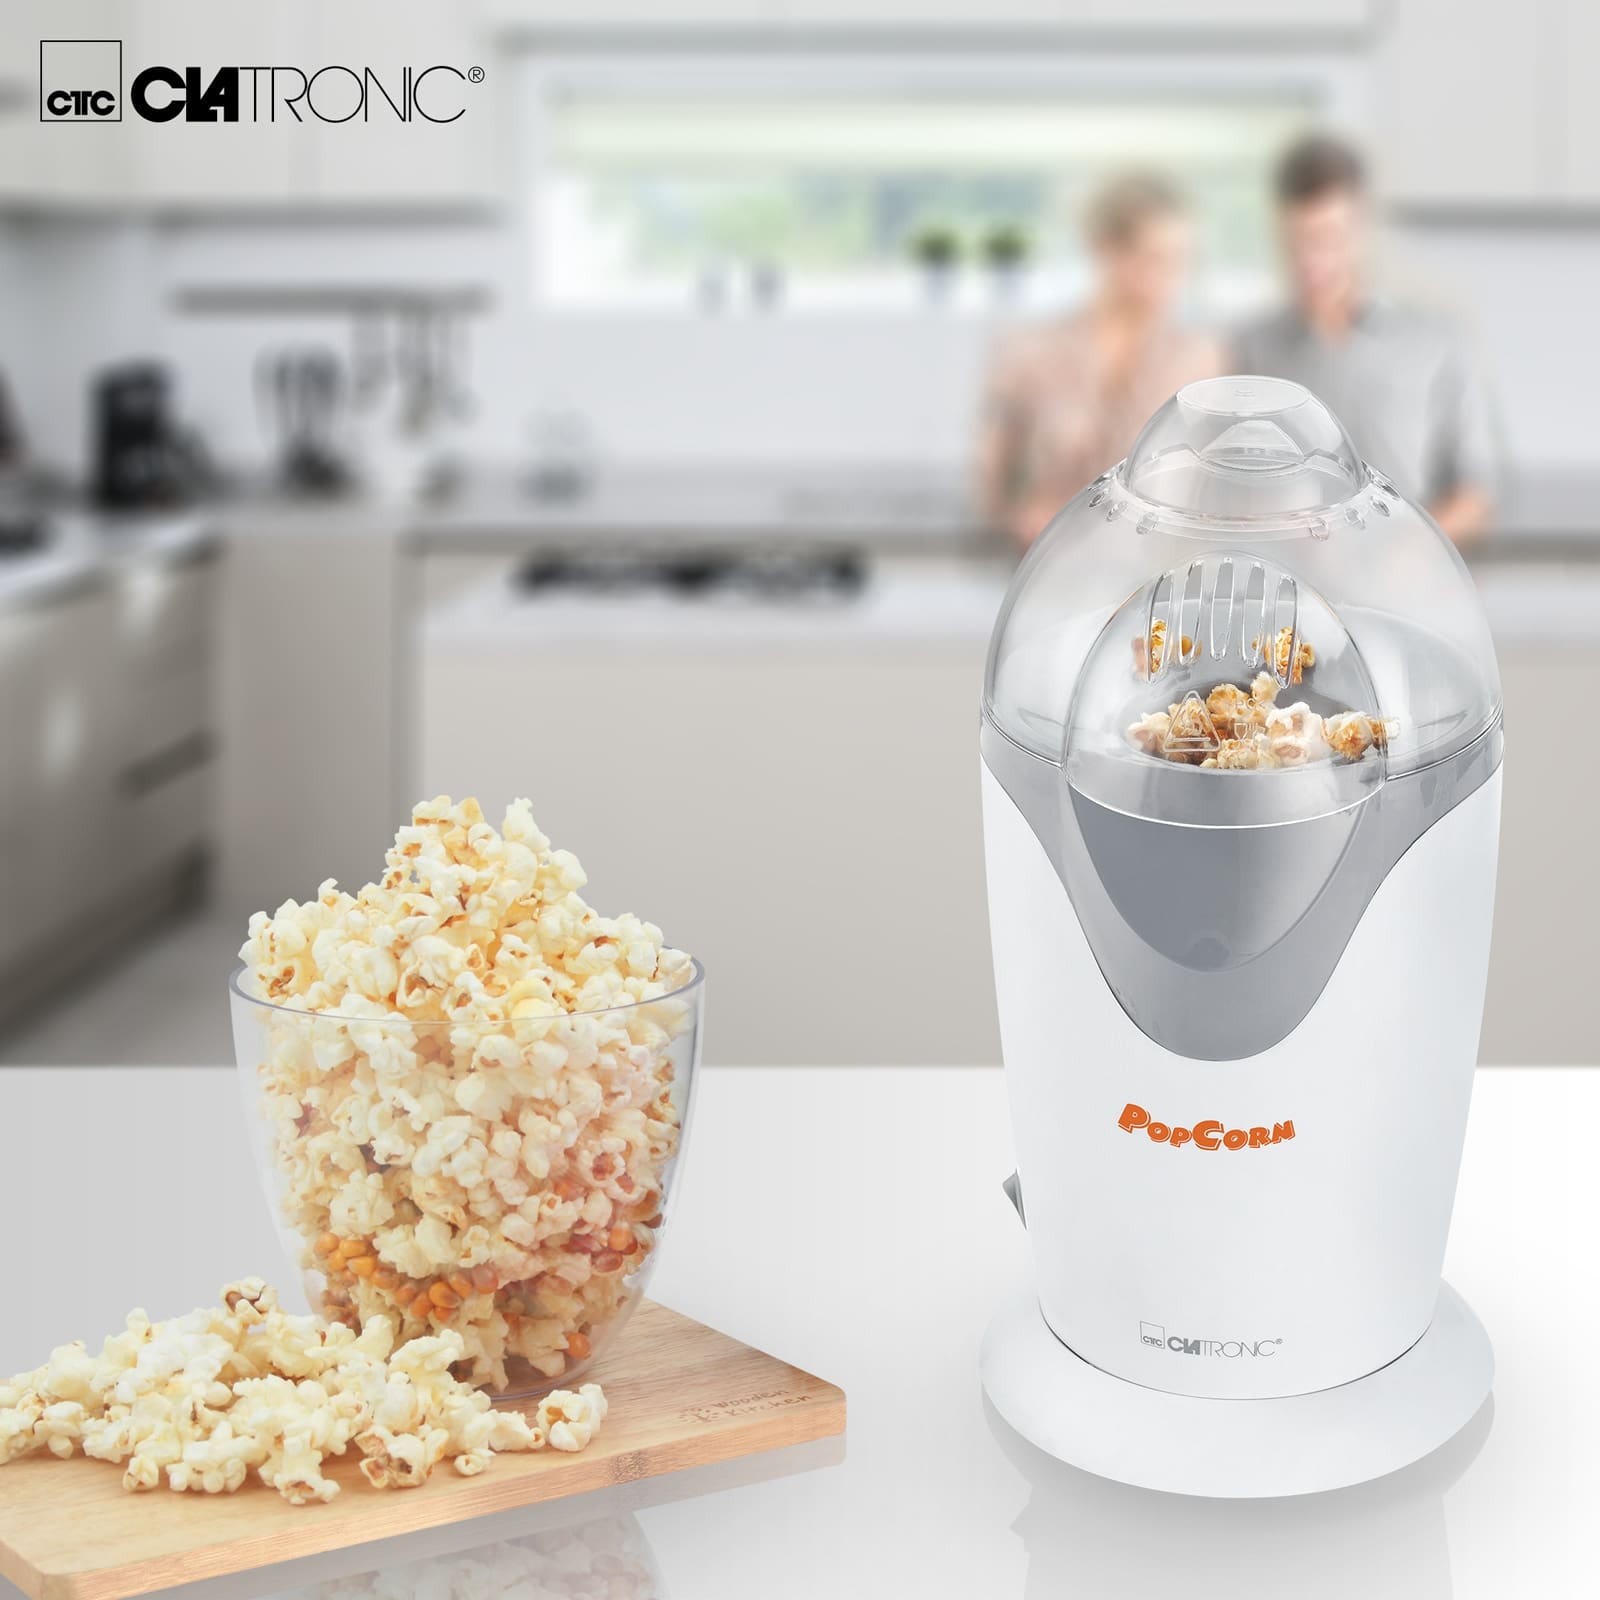 CLATRONIC Popcornmaschine PM 3635, 1200 W, weiß